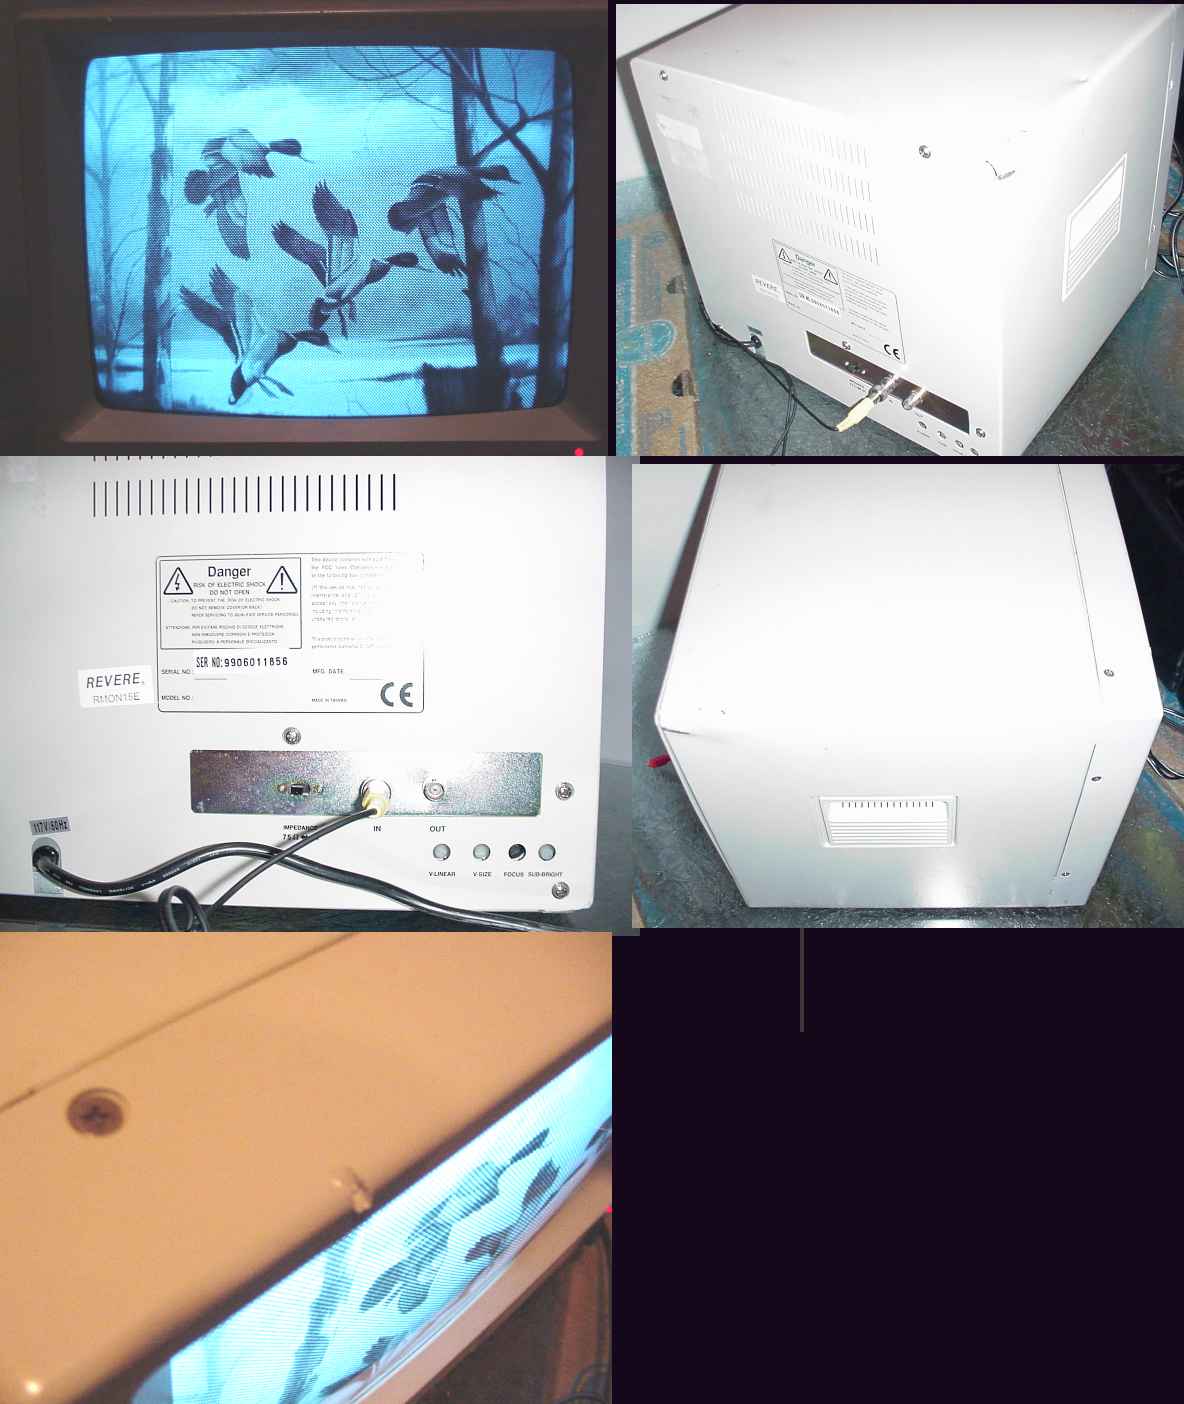 Revere Black and White 15 in CCTV Monitor RMON15E